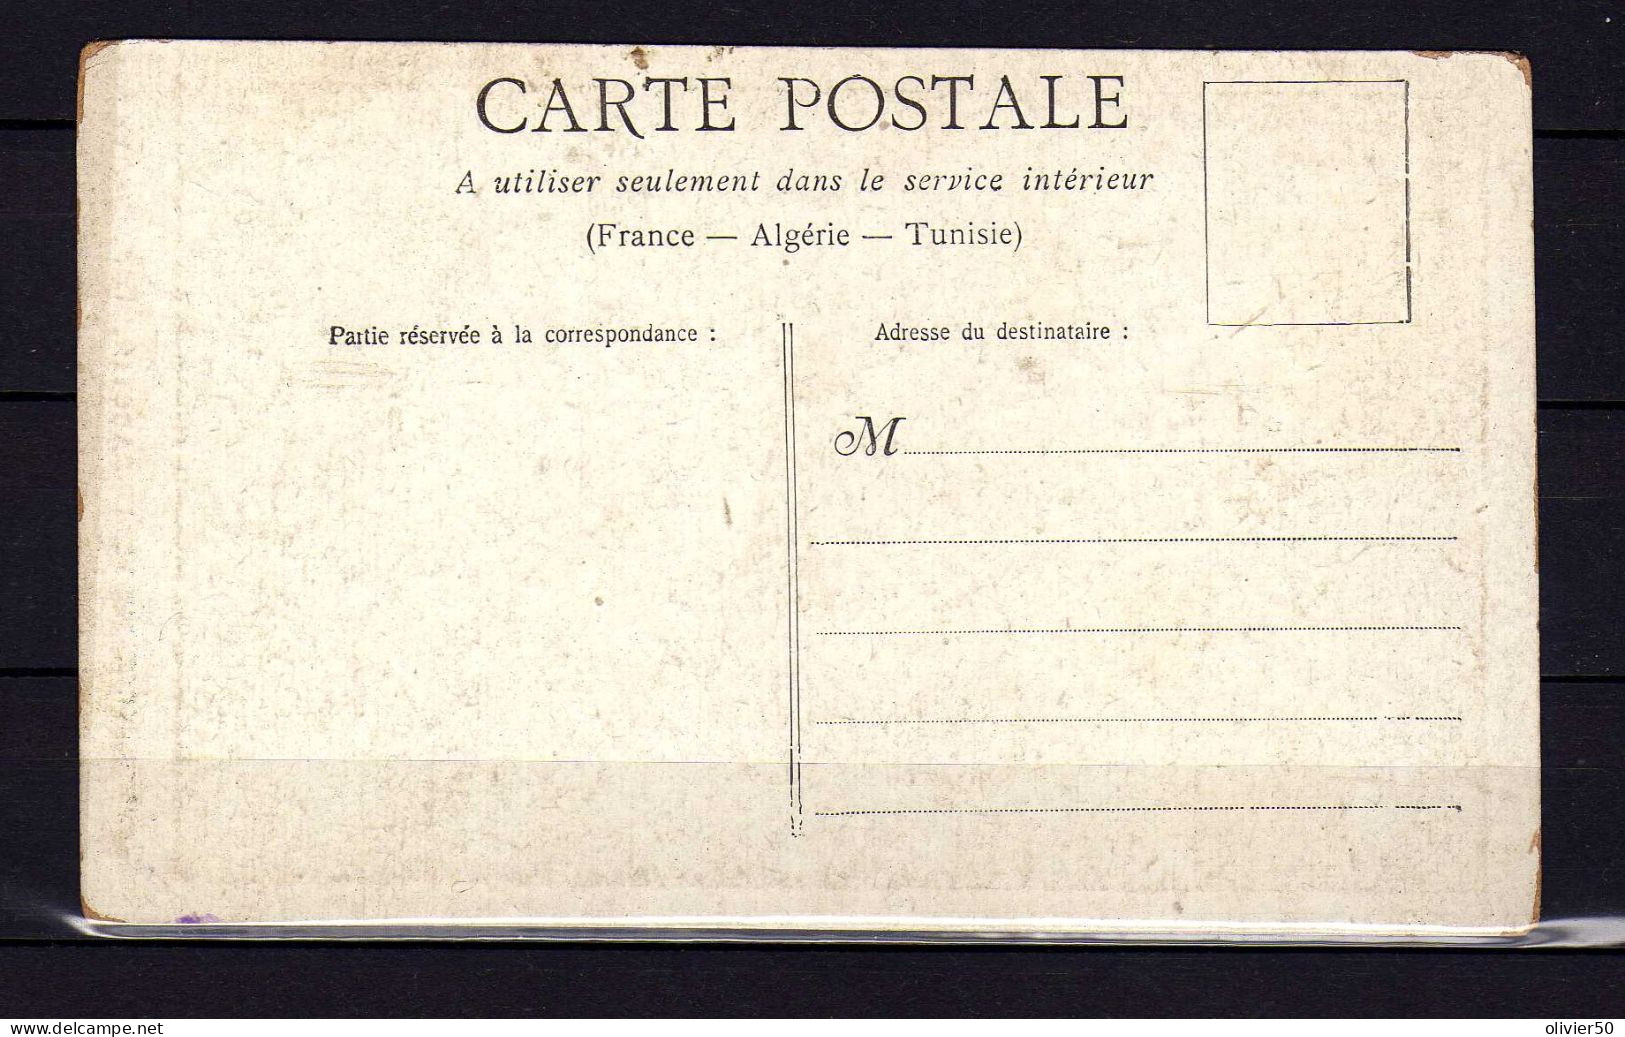 Paris - Chappellerie - Thevenin-Rabotin - 106 Bd Voltaire - Carte Publicitaire - Paris (11)